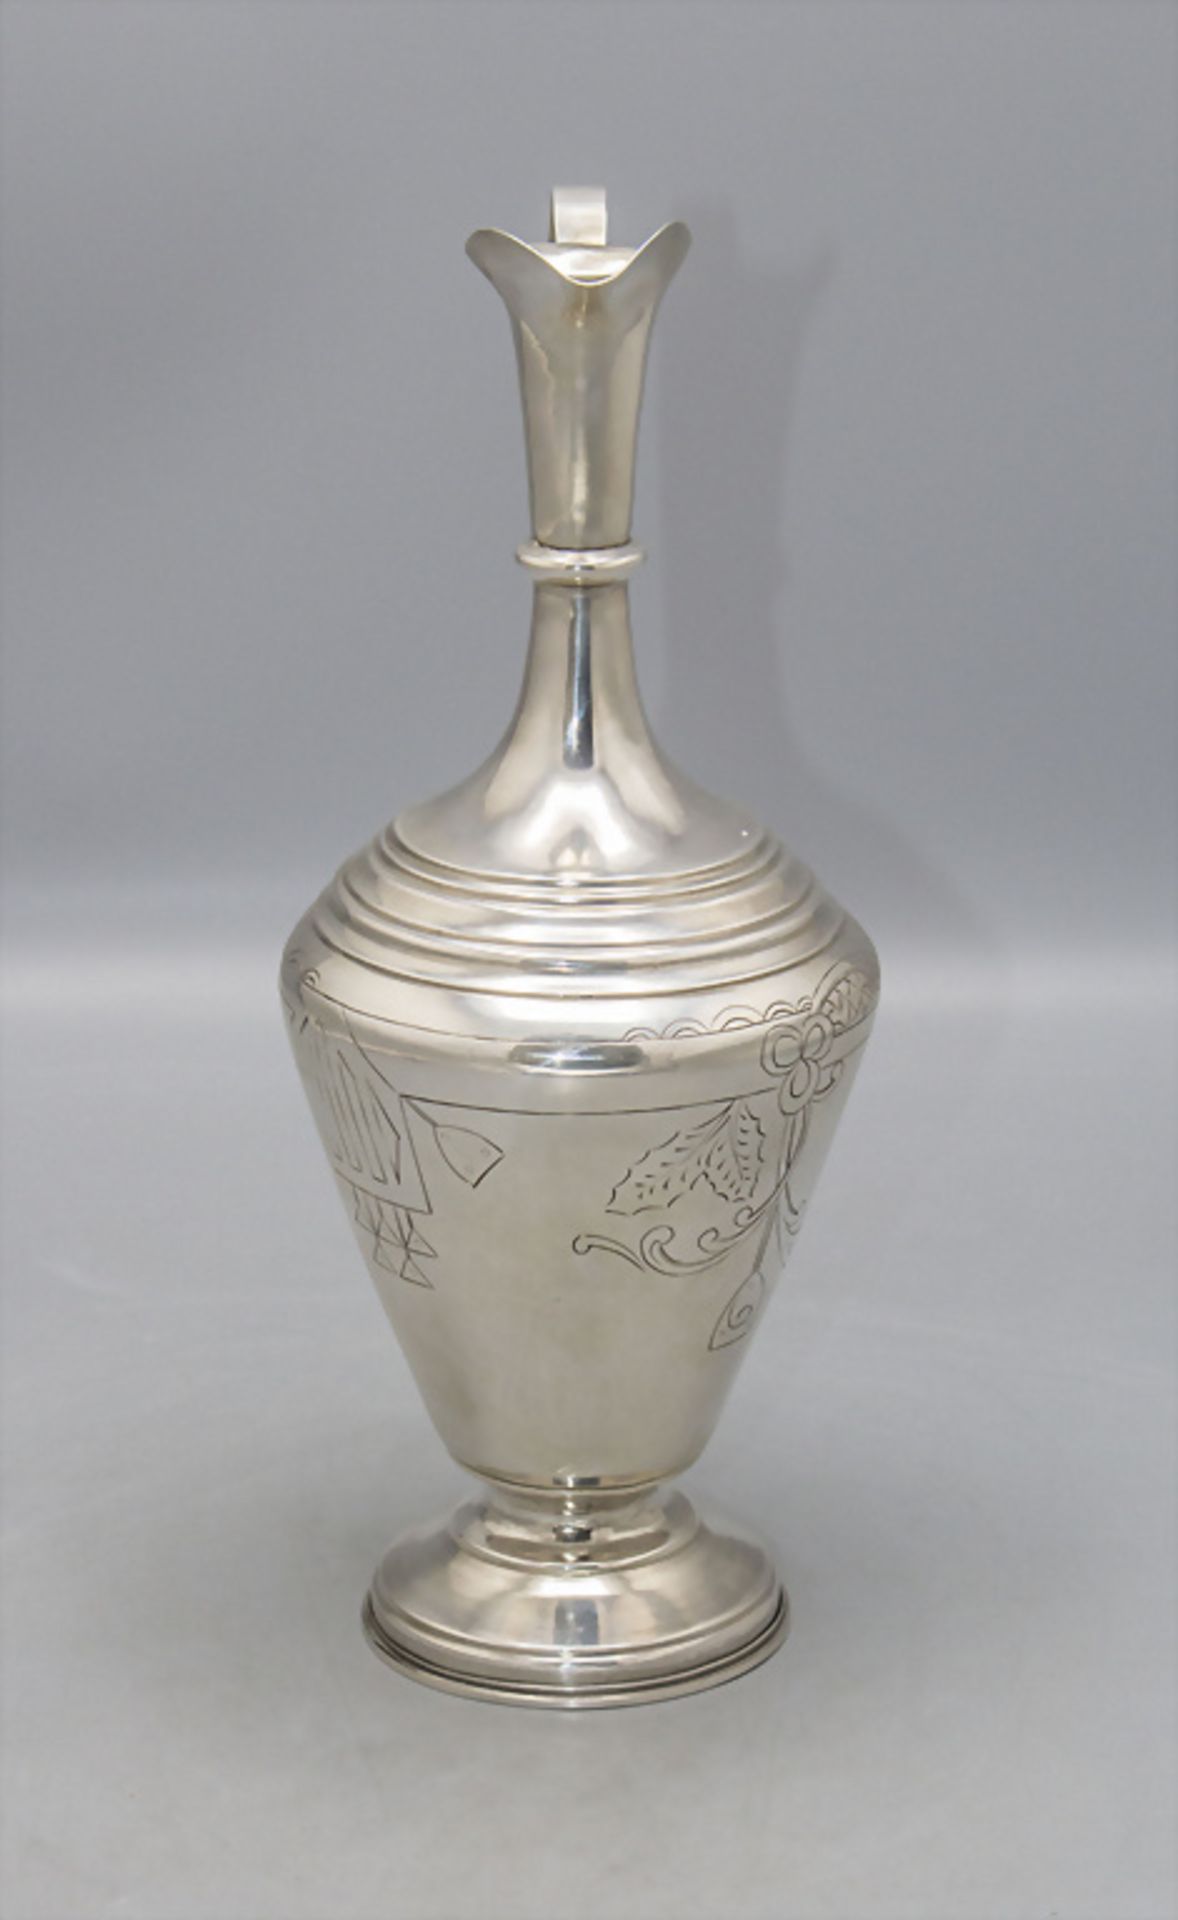 Schenkkrug / A silver jug, Vasily Sergeevich Sikachev, Moskau/Moscow, 1908-1917 - Bild 2 aus 6